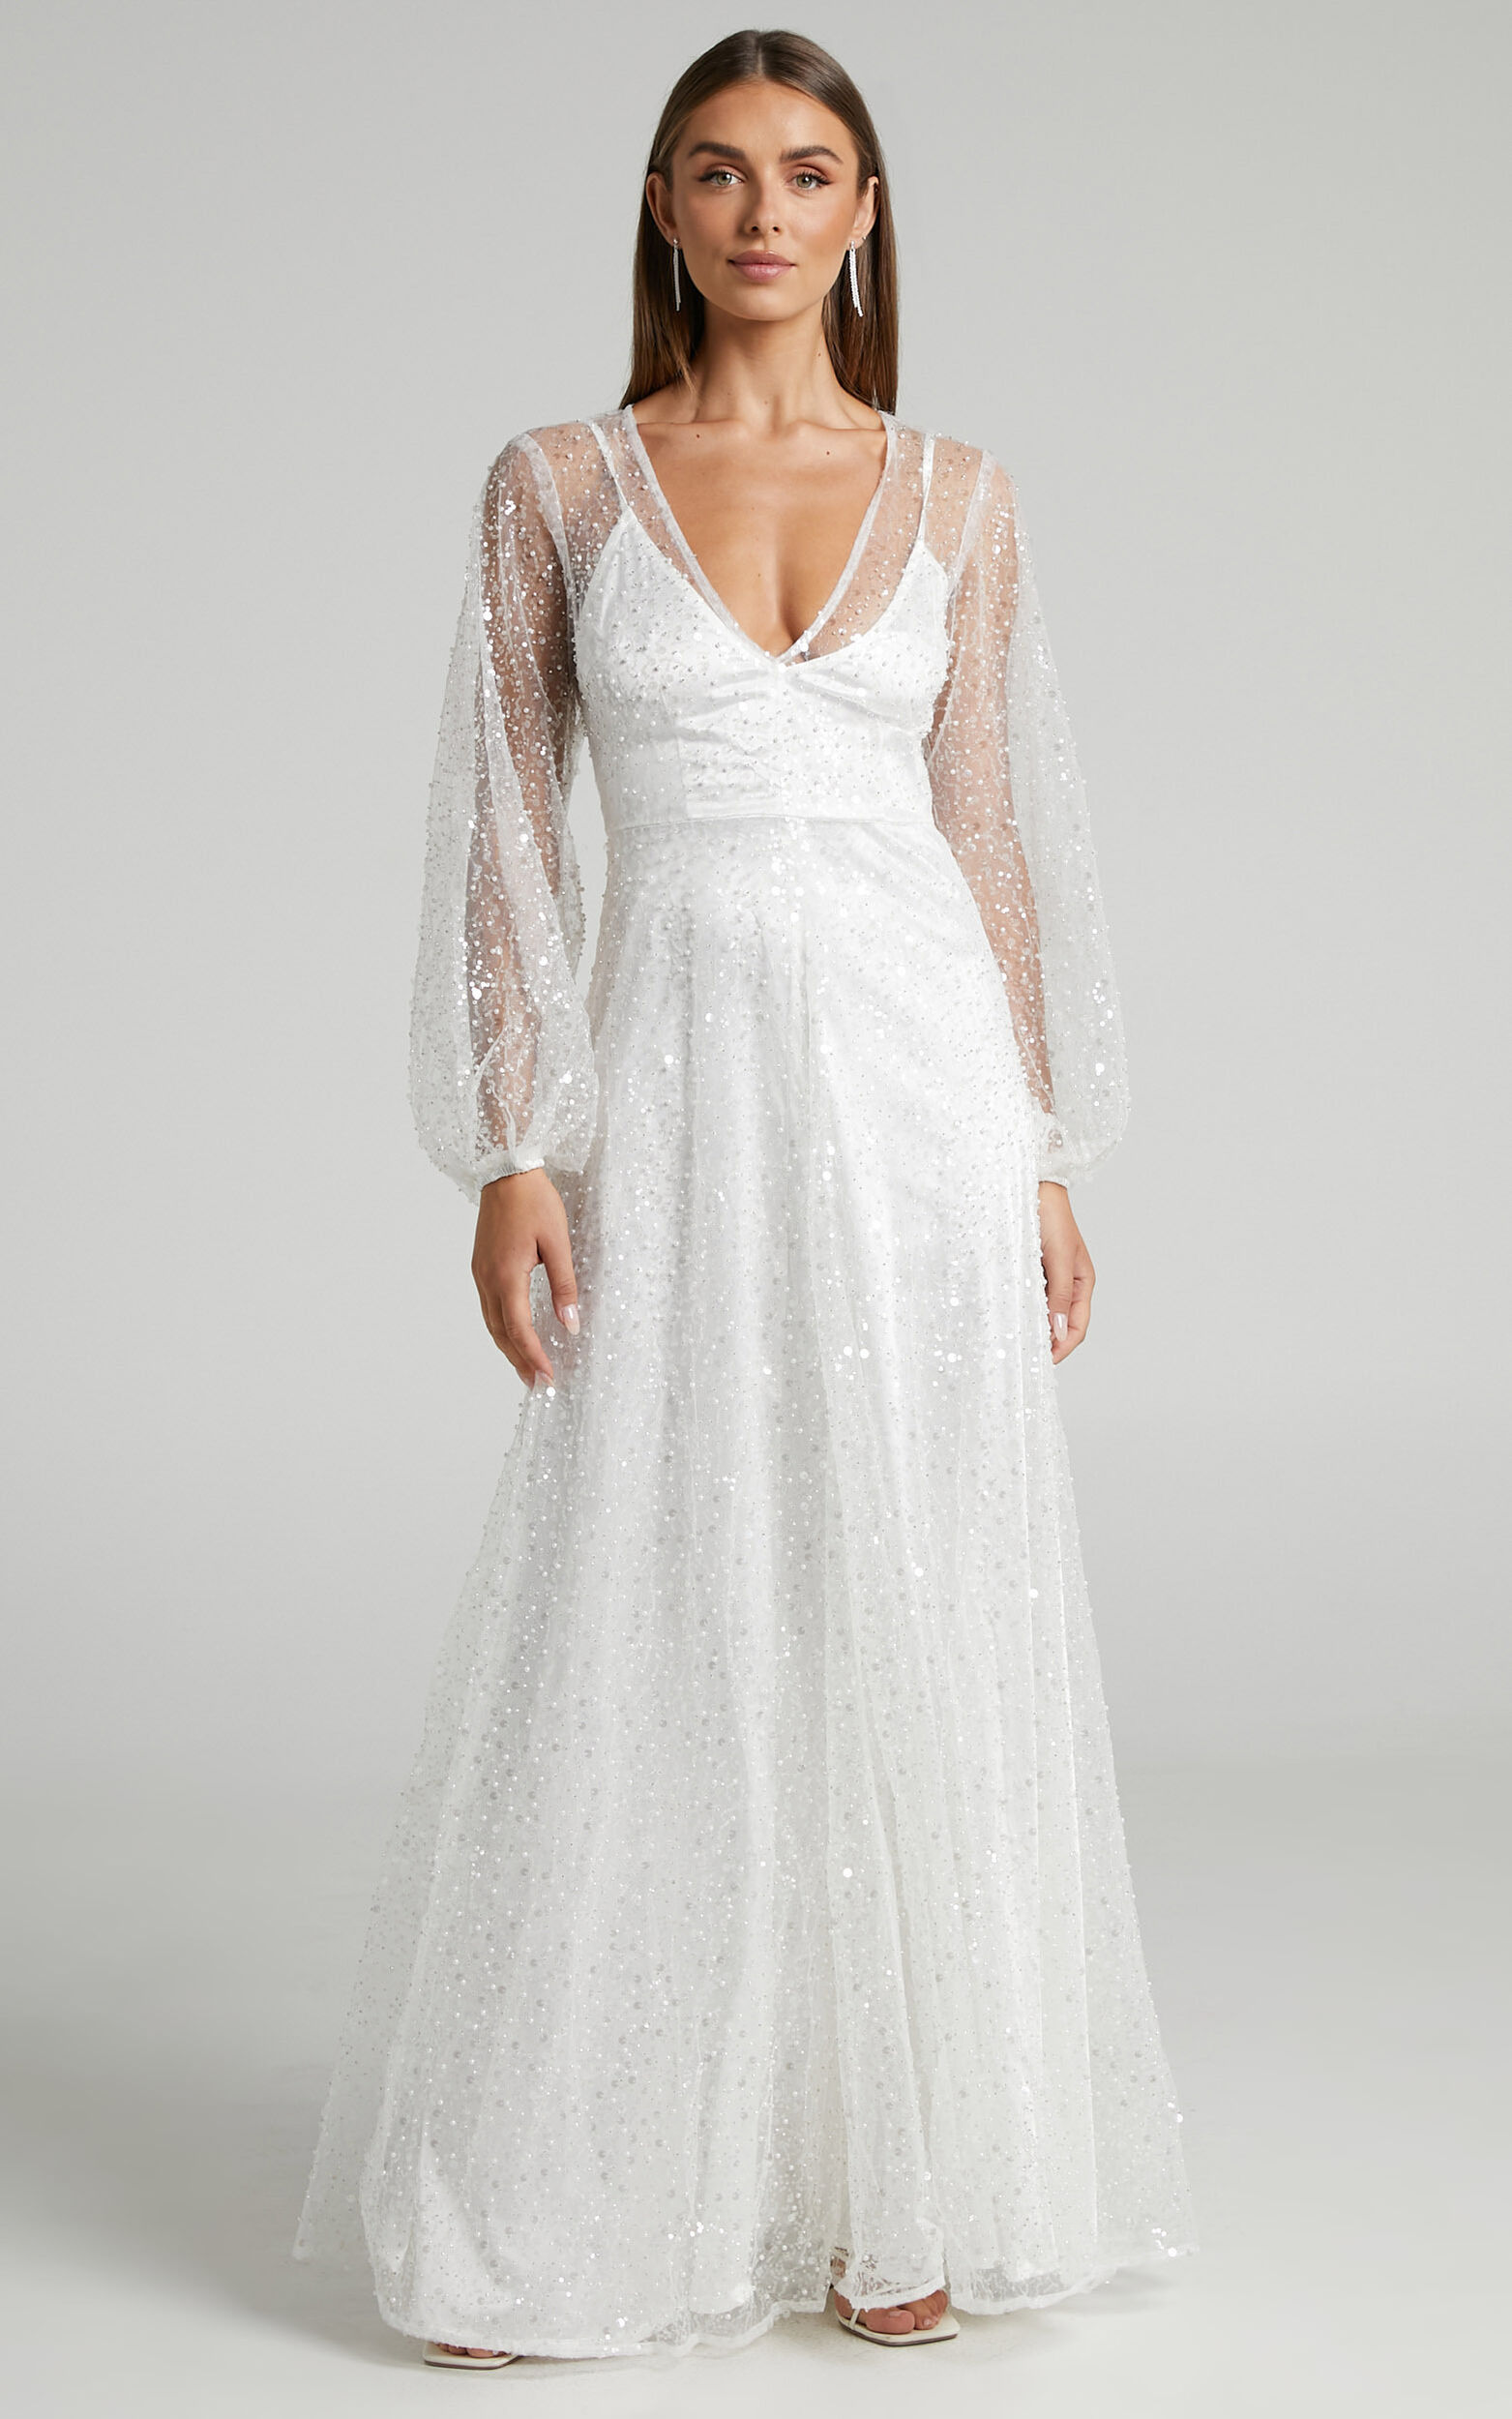 Leauna Bridal Gown - Sheer Long Sleeve Deep V Neck Embellished Tulle ...